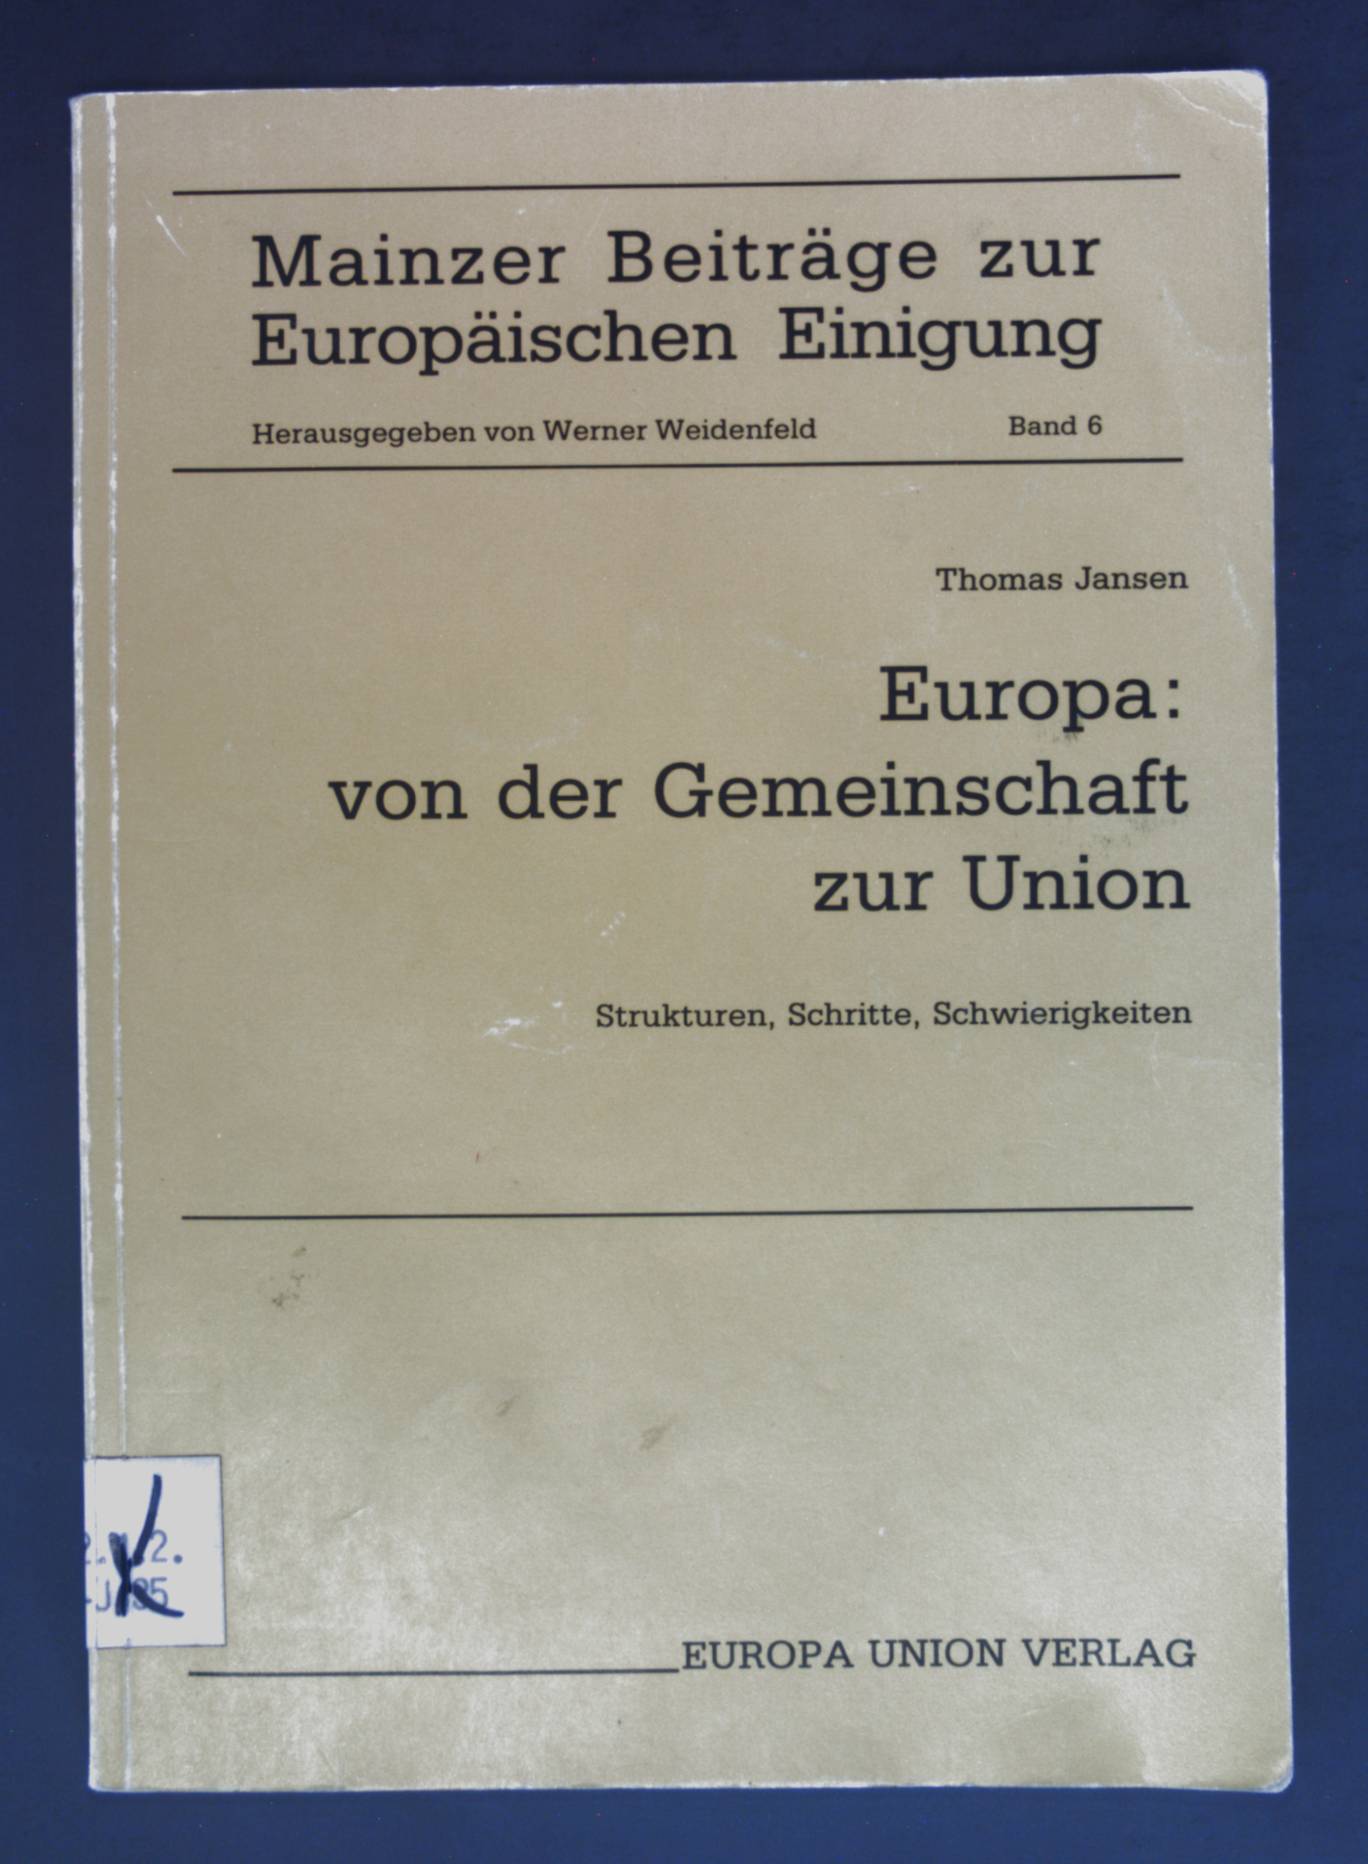 Europa: Von der Gemeinschaft zur Union : Strukturen, Schritte, Schwierigkeiten (Mainzer Beiträge zur europäischen Einigung)